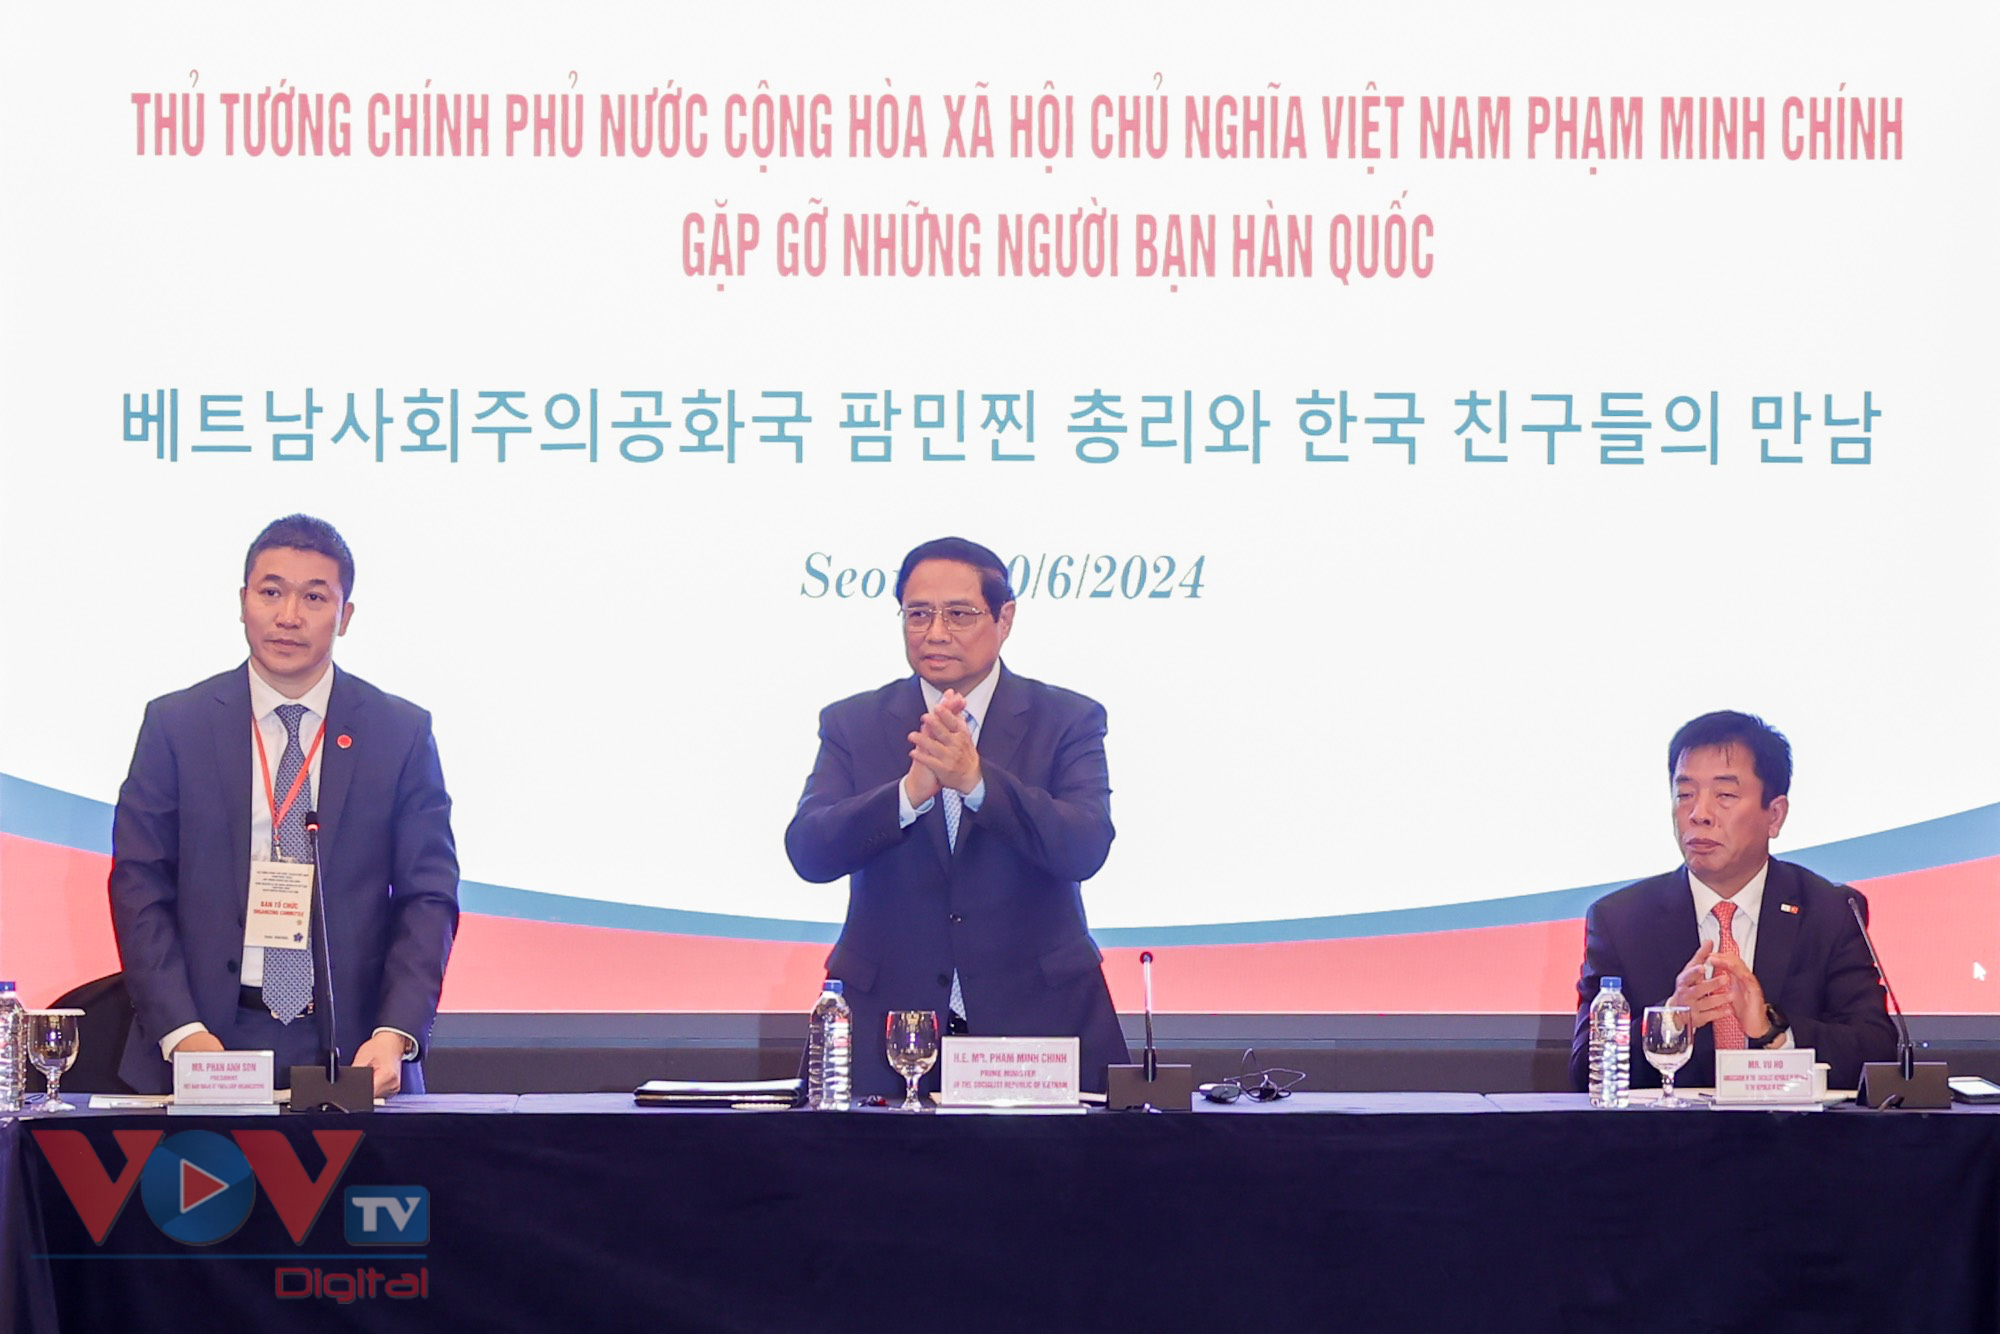 Thủ tướng Phạm Minh Chính xúc động khi gặp những người bạn Hàn Quốc- Ảnh 1.